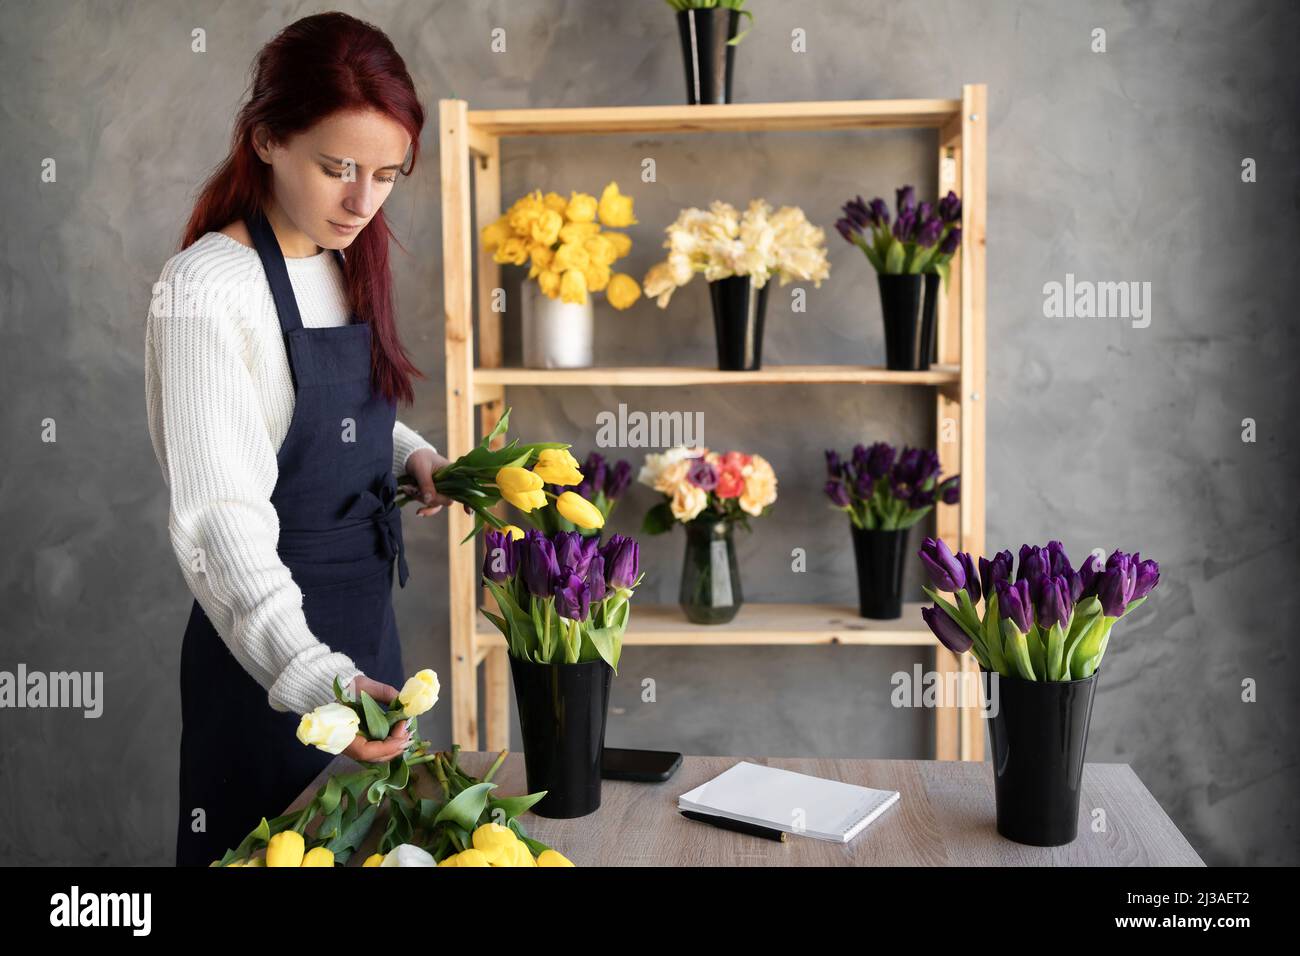 Ein kleines Geschäft. Eine Frau Floristin in einem Blumenladen in der Nähe einer Vitrine mit Tulpen in einer Schürze sammelt einen Strauß von Tulpenblumen. Blumenlieferung Stockfoto